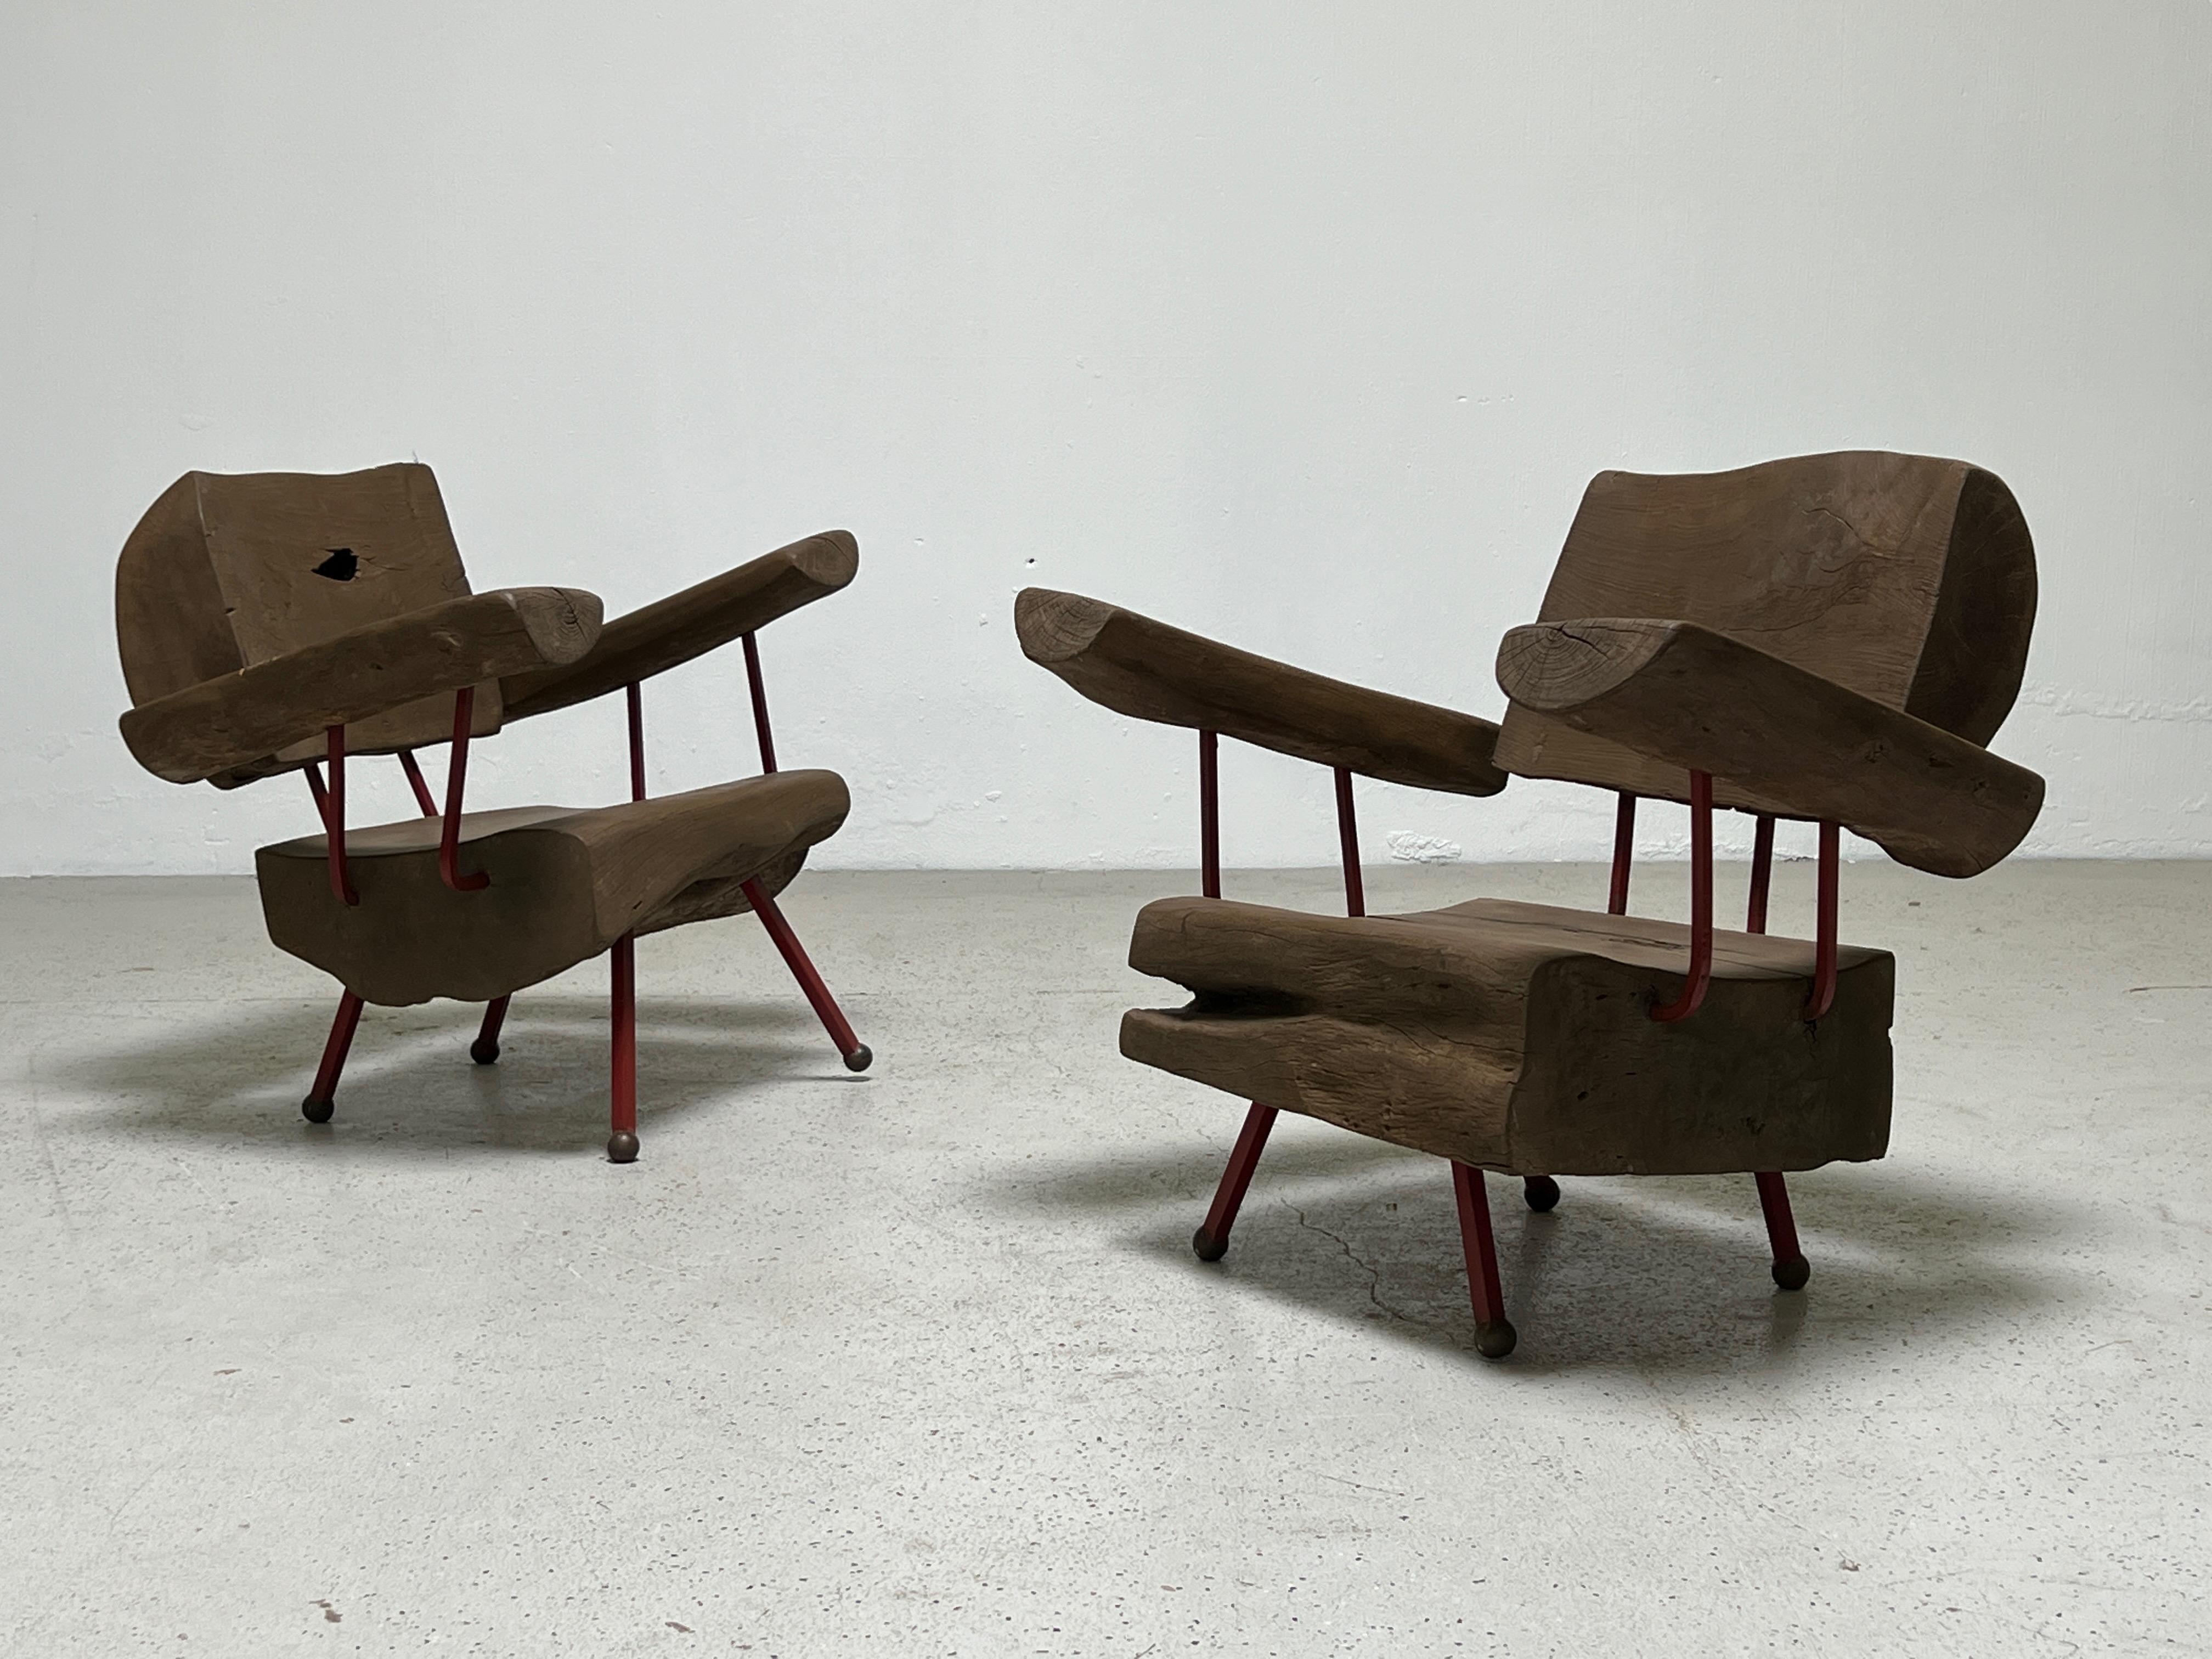 Une paire de chaises longues en bois massif avec des cadres en fer par Sabena du Mexique.